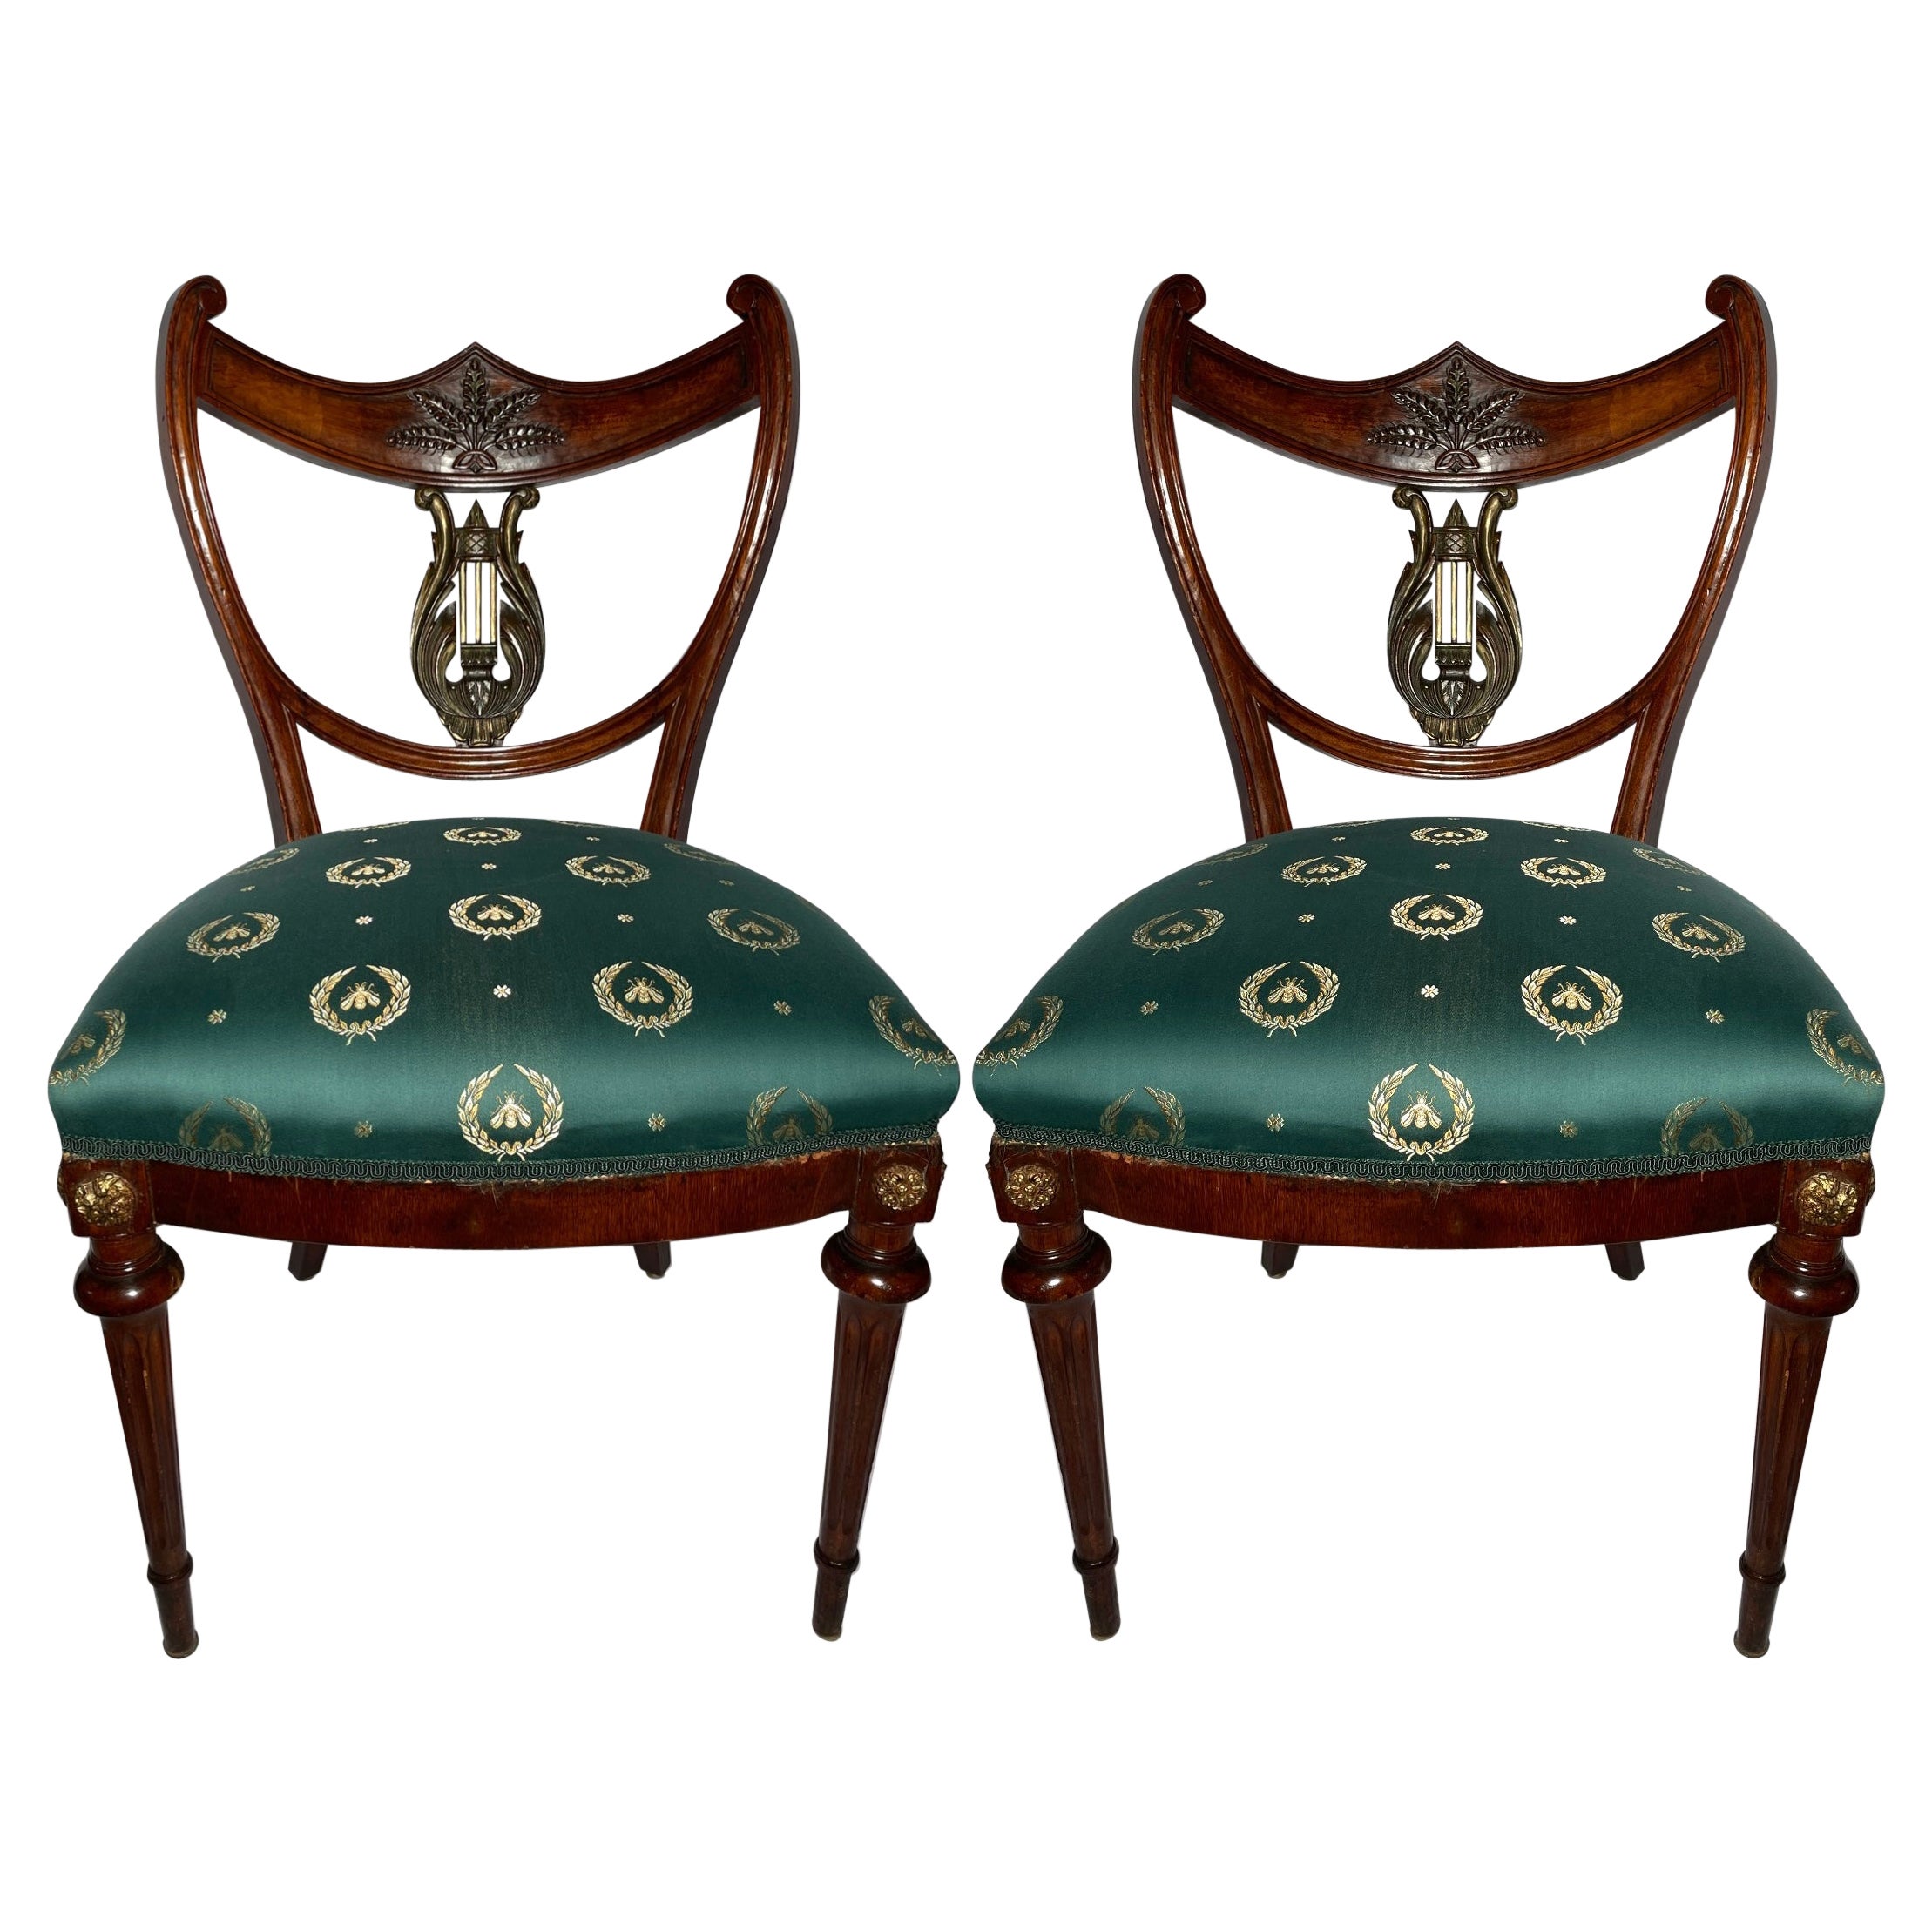 Paire de chaises anciennes de style Rgence anglaise en acajou, vers 1820-1830